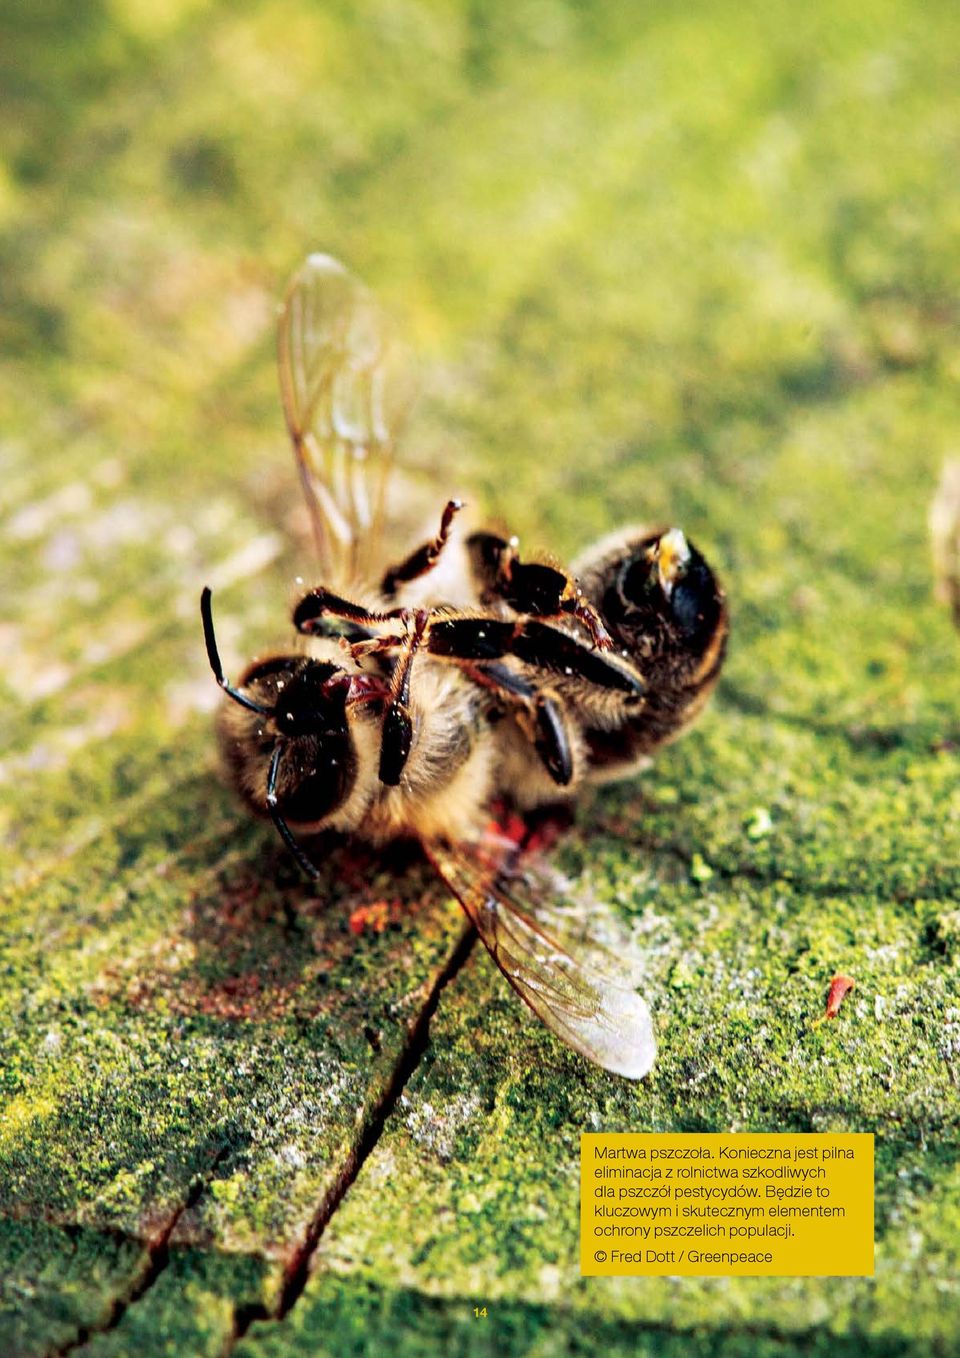 szkodliwych dla pszczół pestycydów.